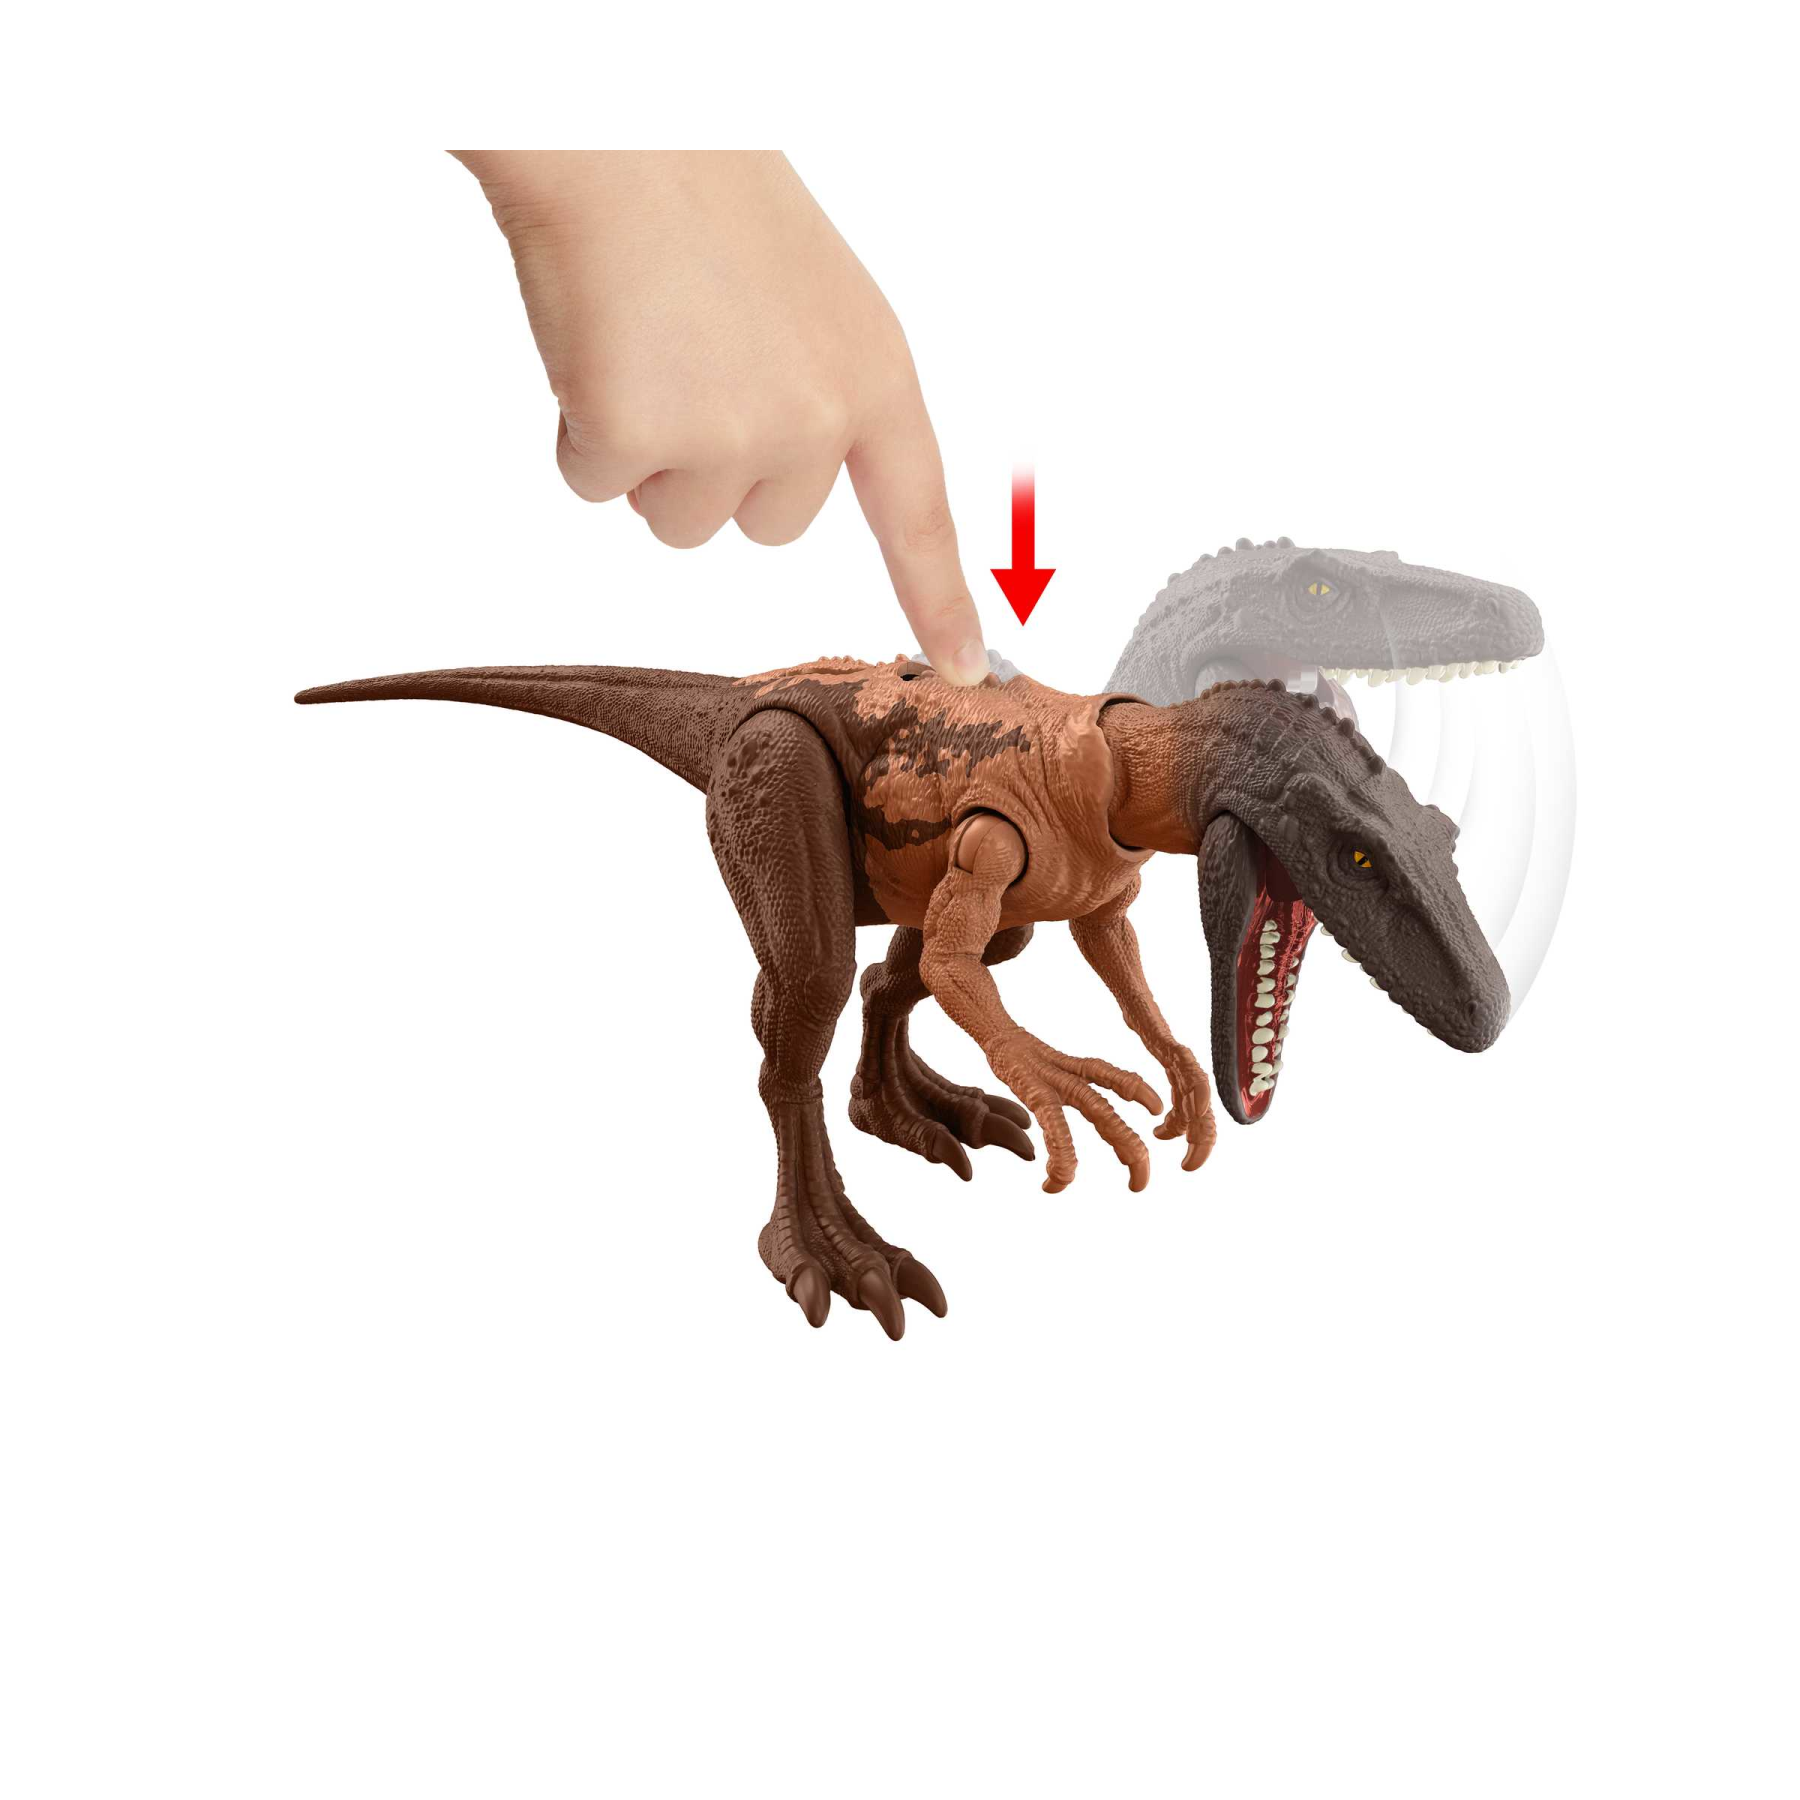 Jurassic world attacco fatale - herrerasaurus, dinosauro con articolazioni mobili e azione d'attacco specifica, giocattolo per bambini, 4+ anni, hln64 - Jurassic World